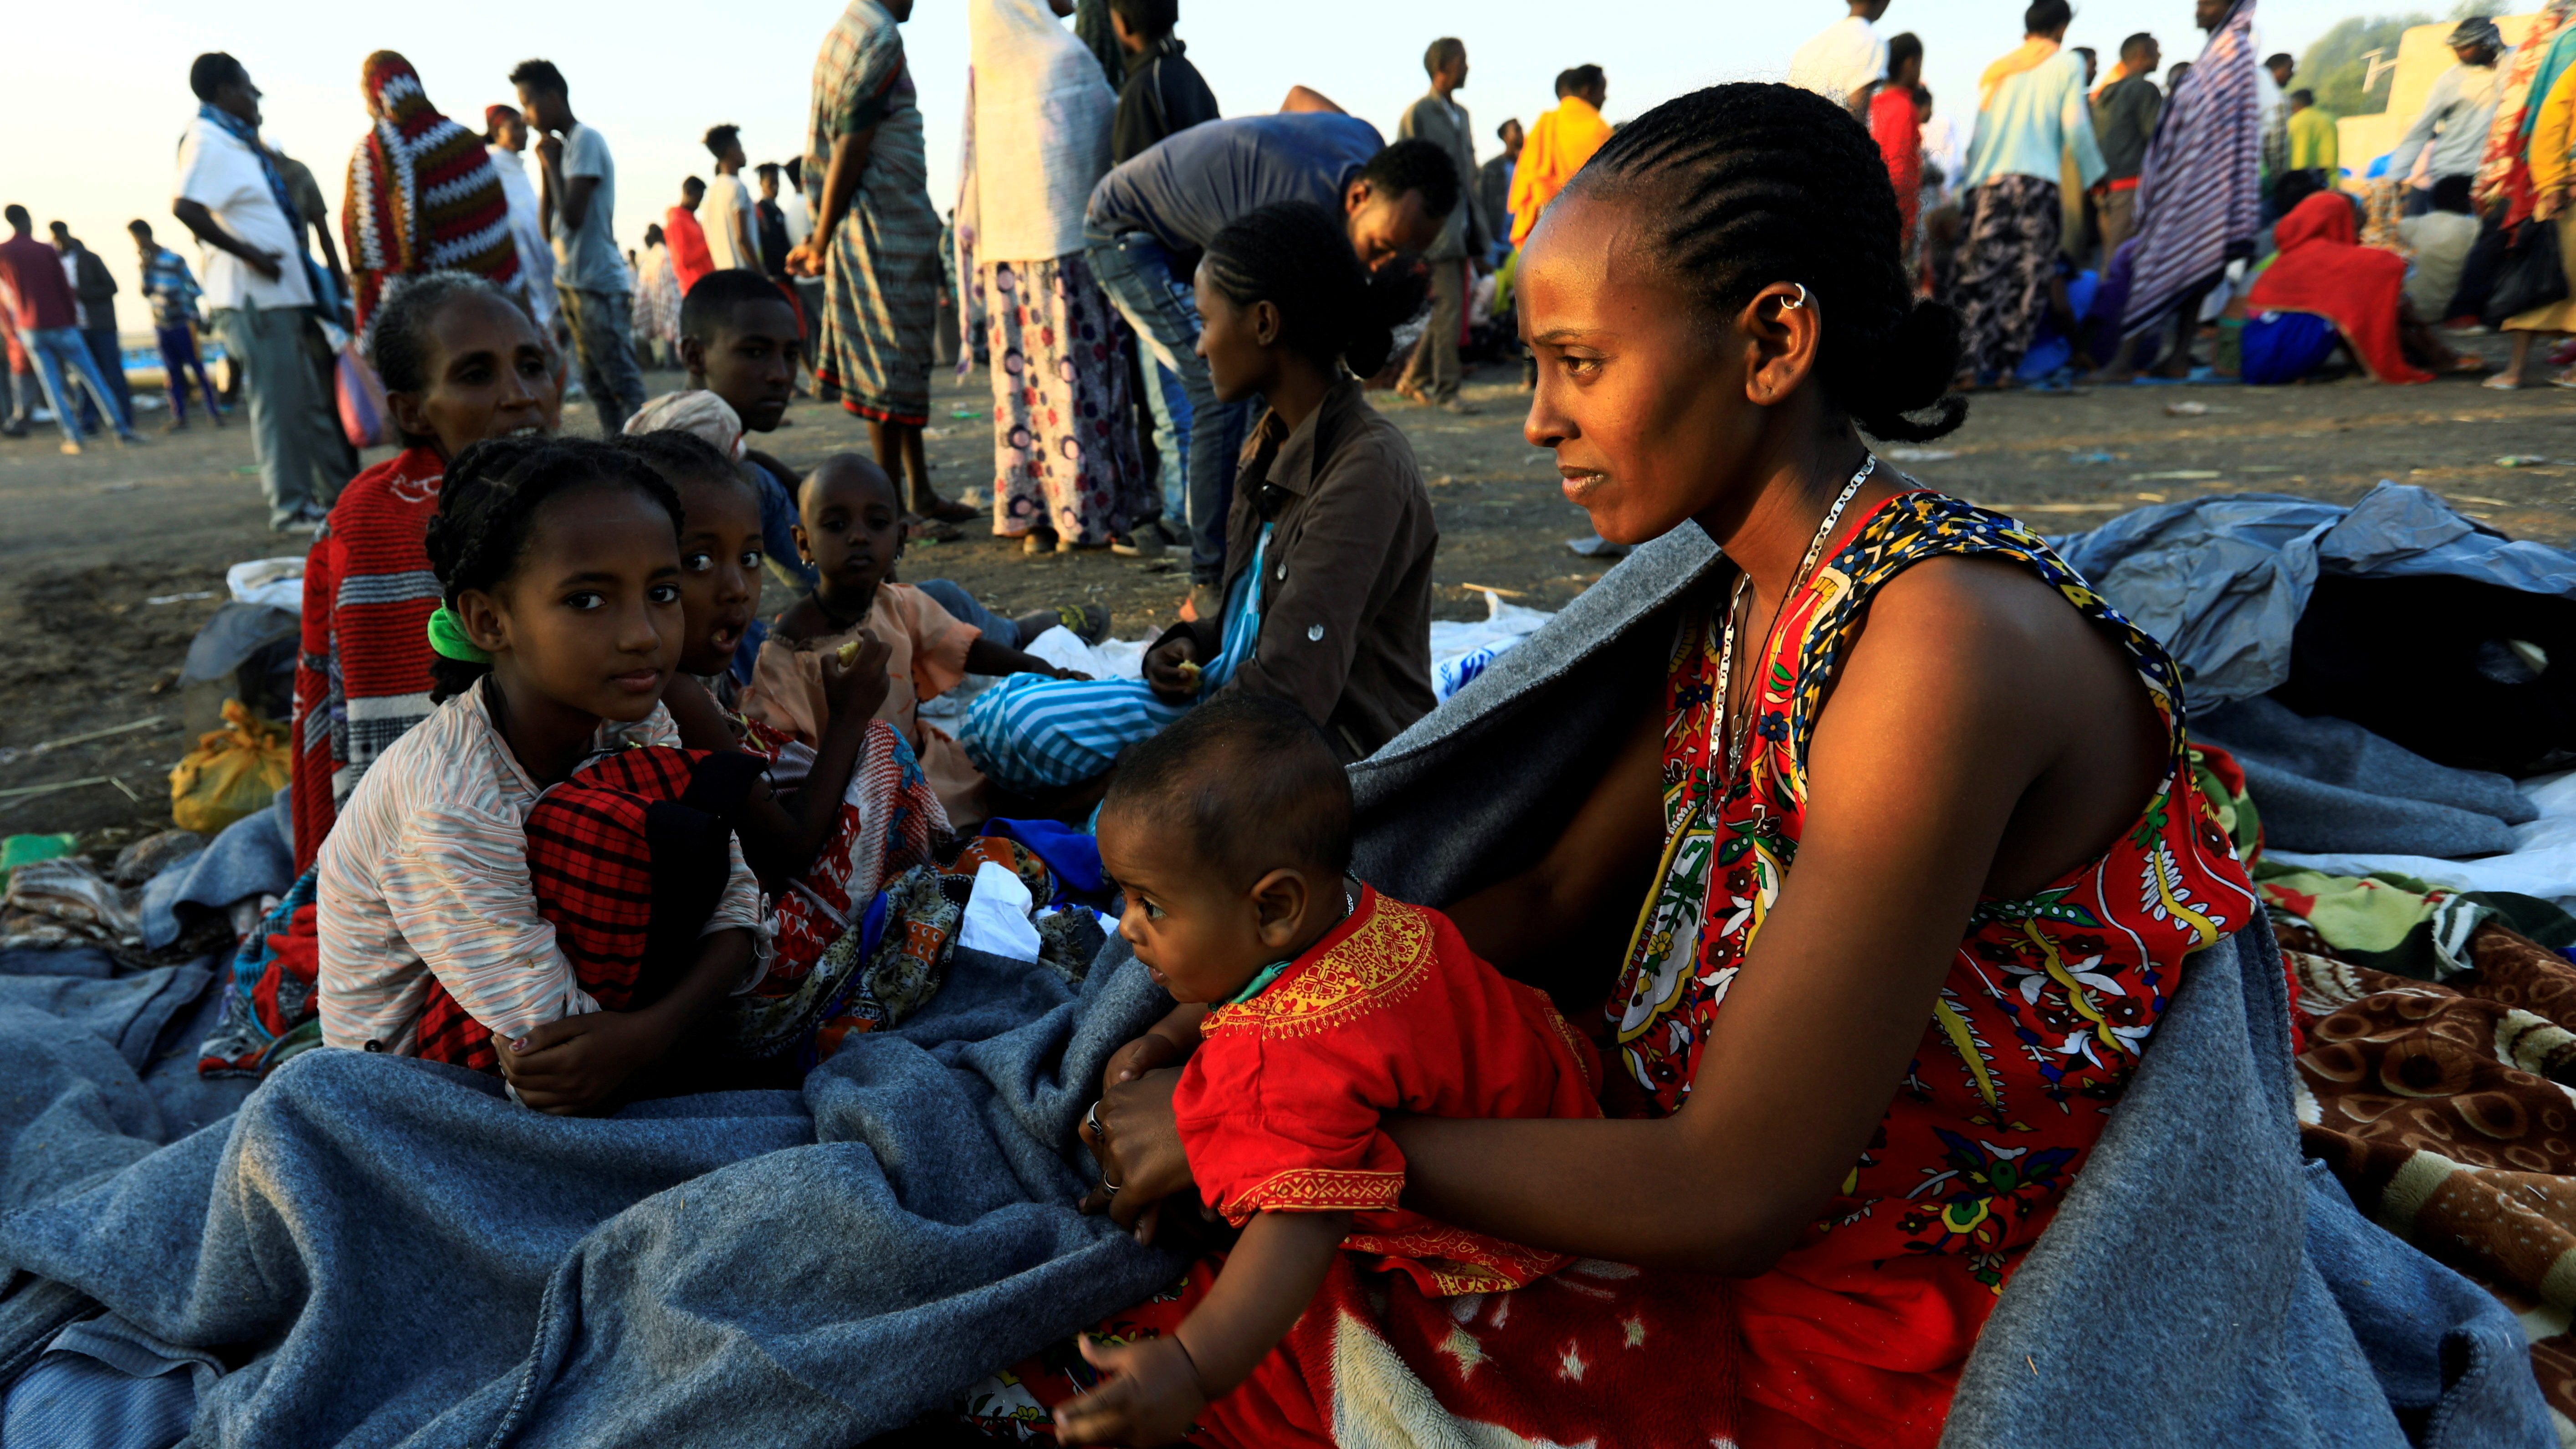 飢えをしのぐために「体を売る」少女たち─エチオピア北部ティグレに広がる絶望 | 自殺を図る人たちも